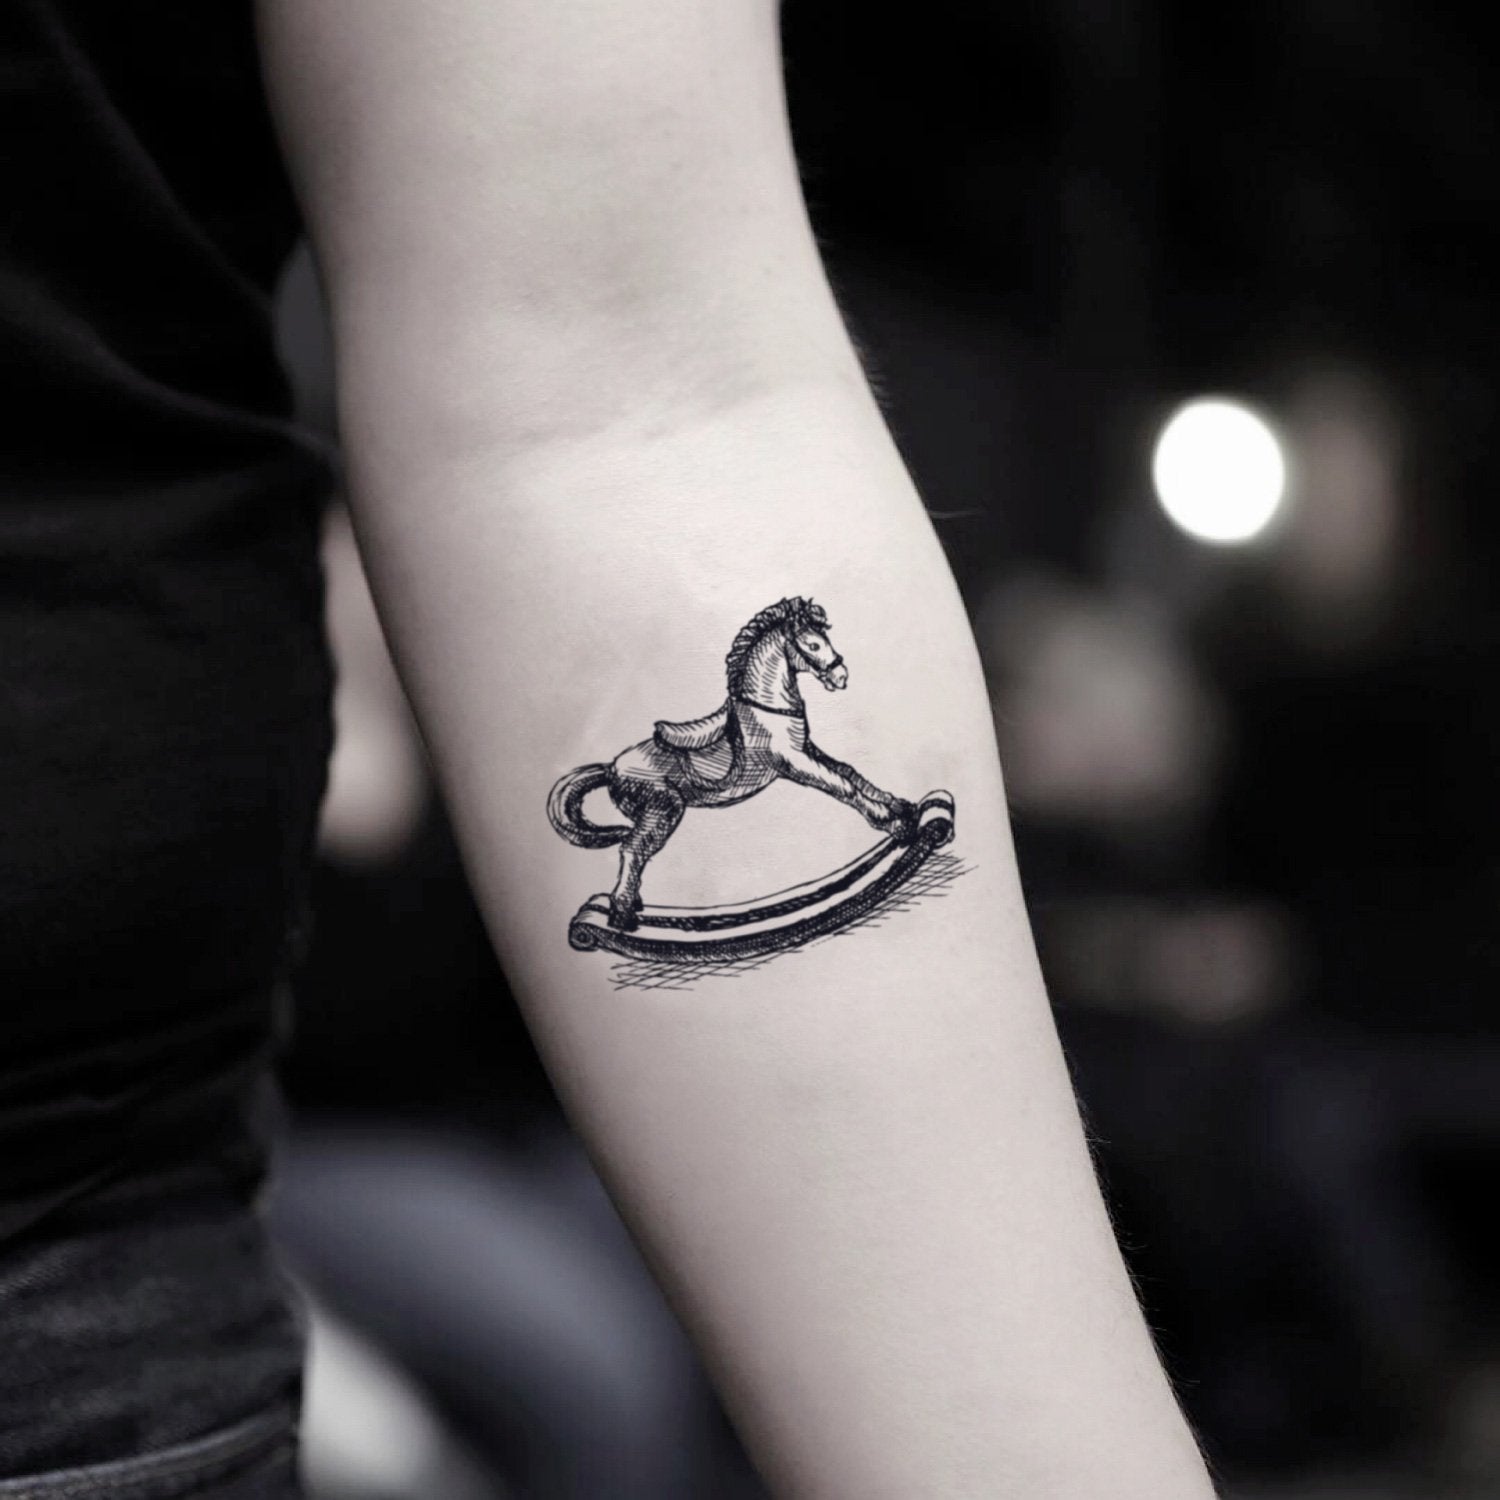 Pin by Horsedizzy on Tattoos | Small horse tattoo, Tattoo models, Tattoos